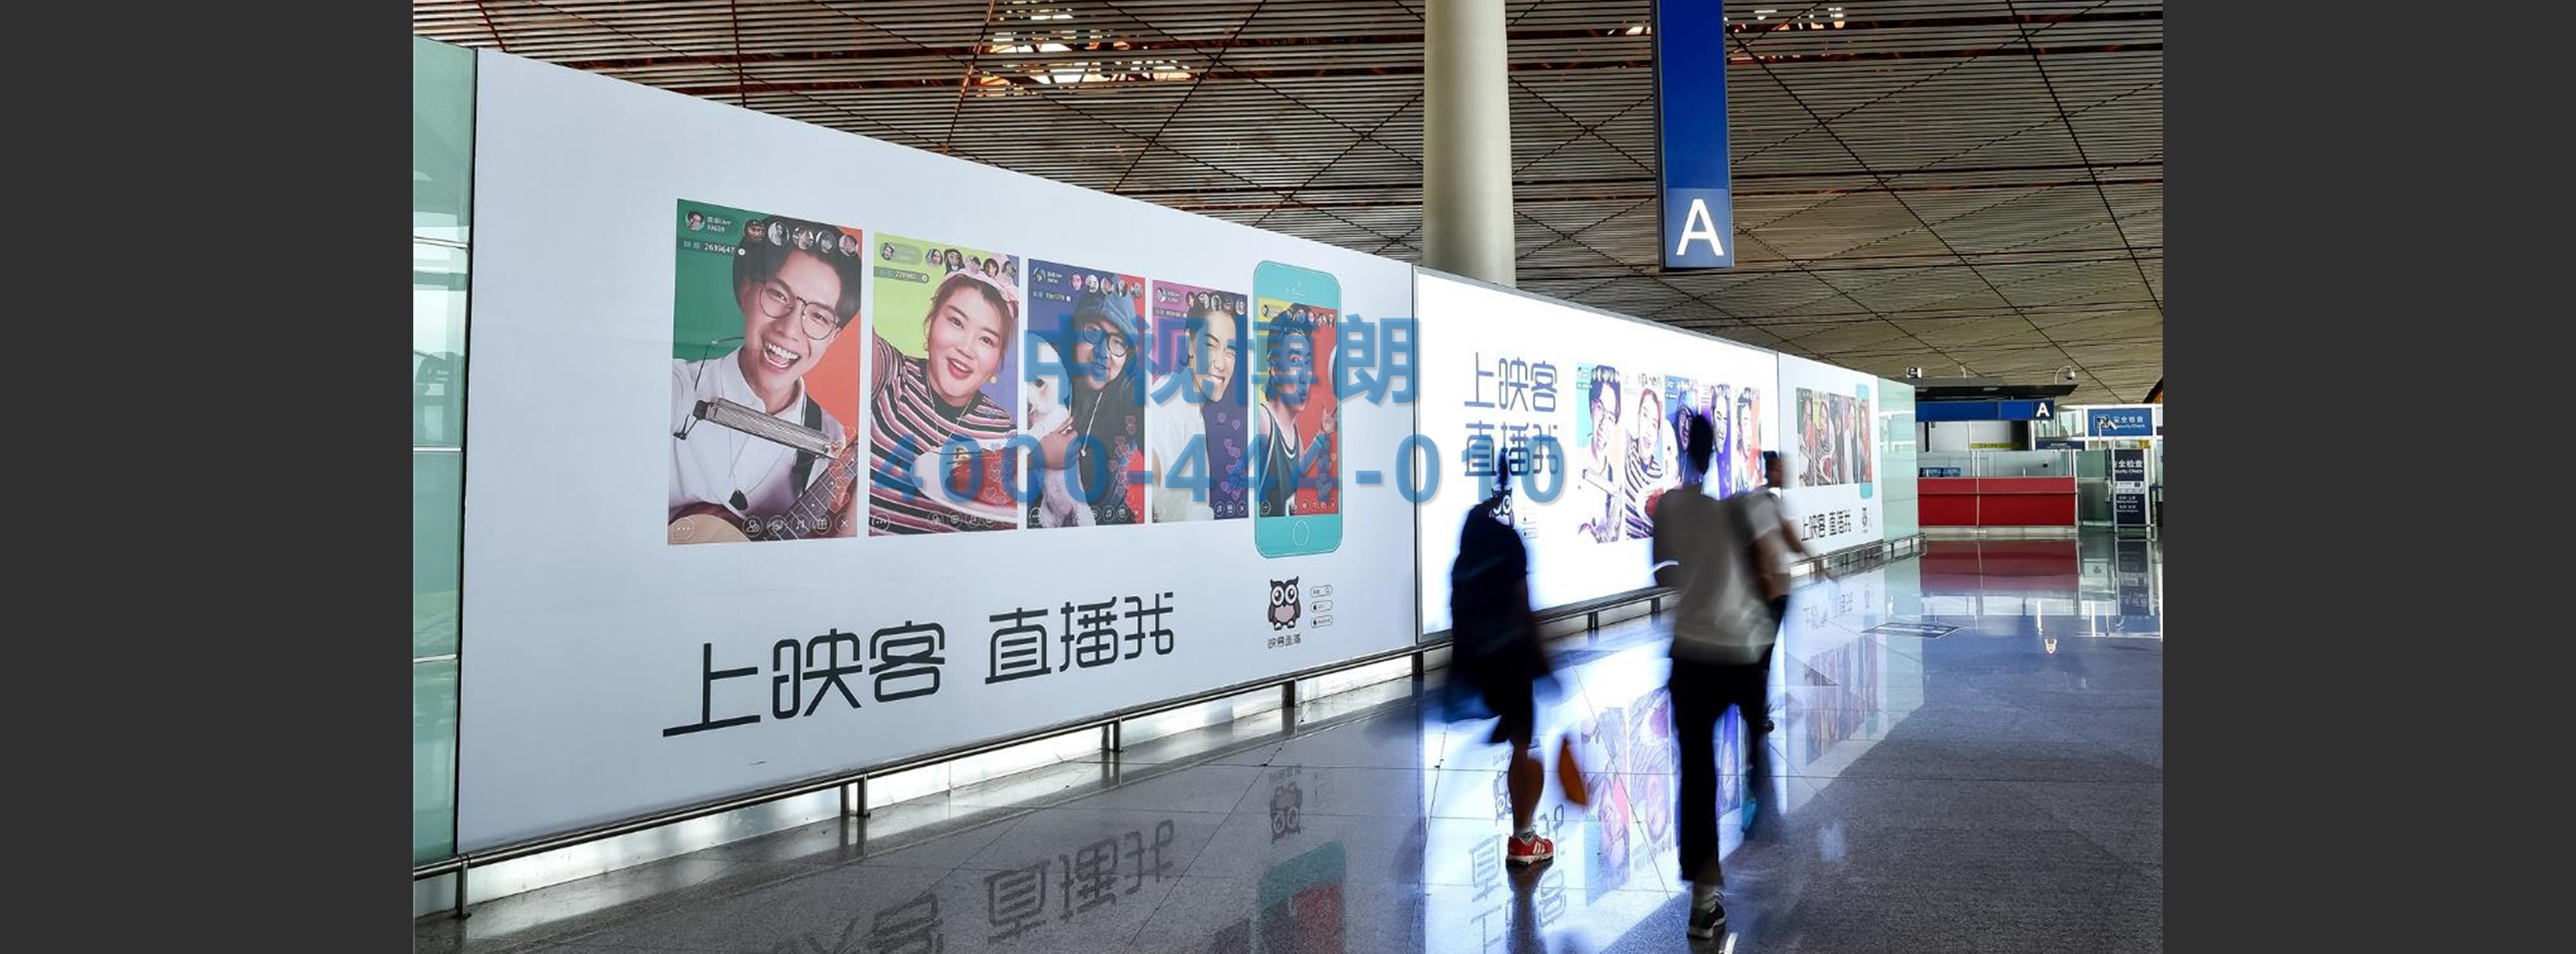 北京首都机场广告-T3 Departure Hall Oversized Light Box and Glass Sticker